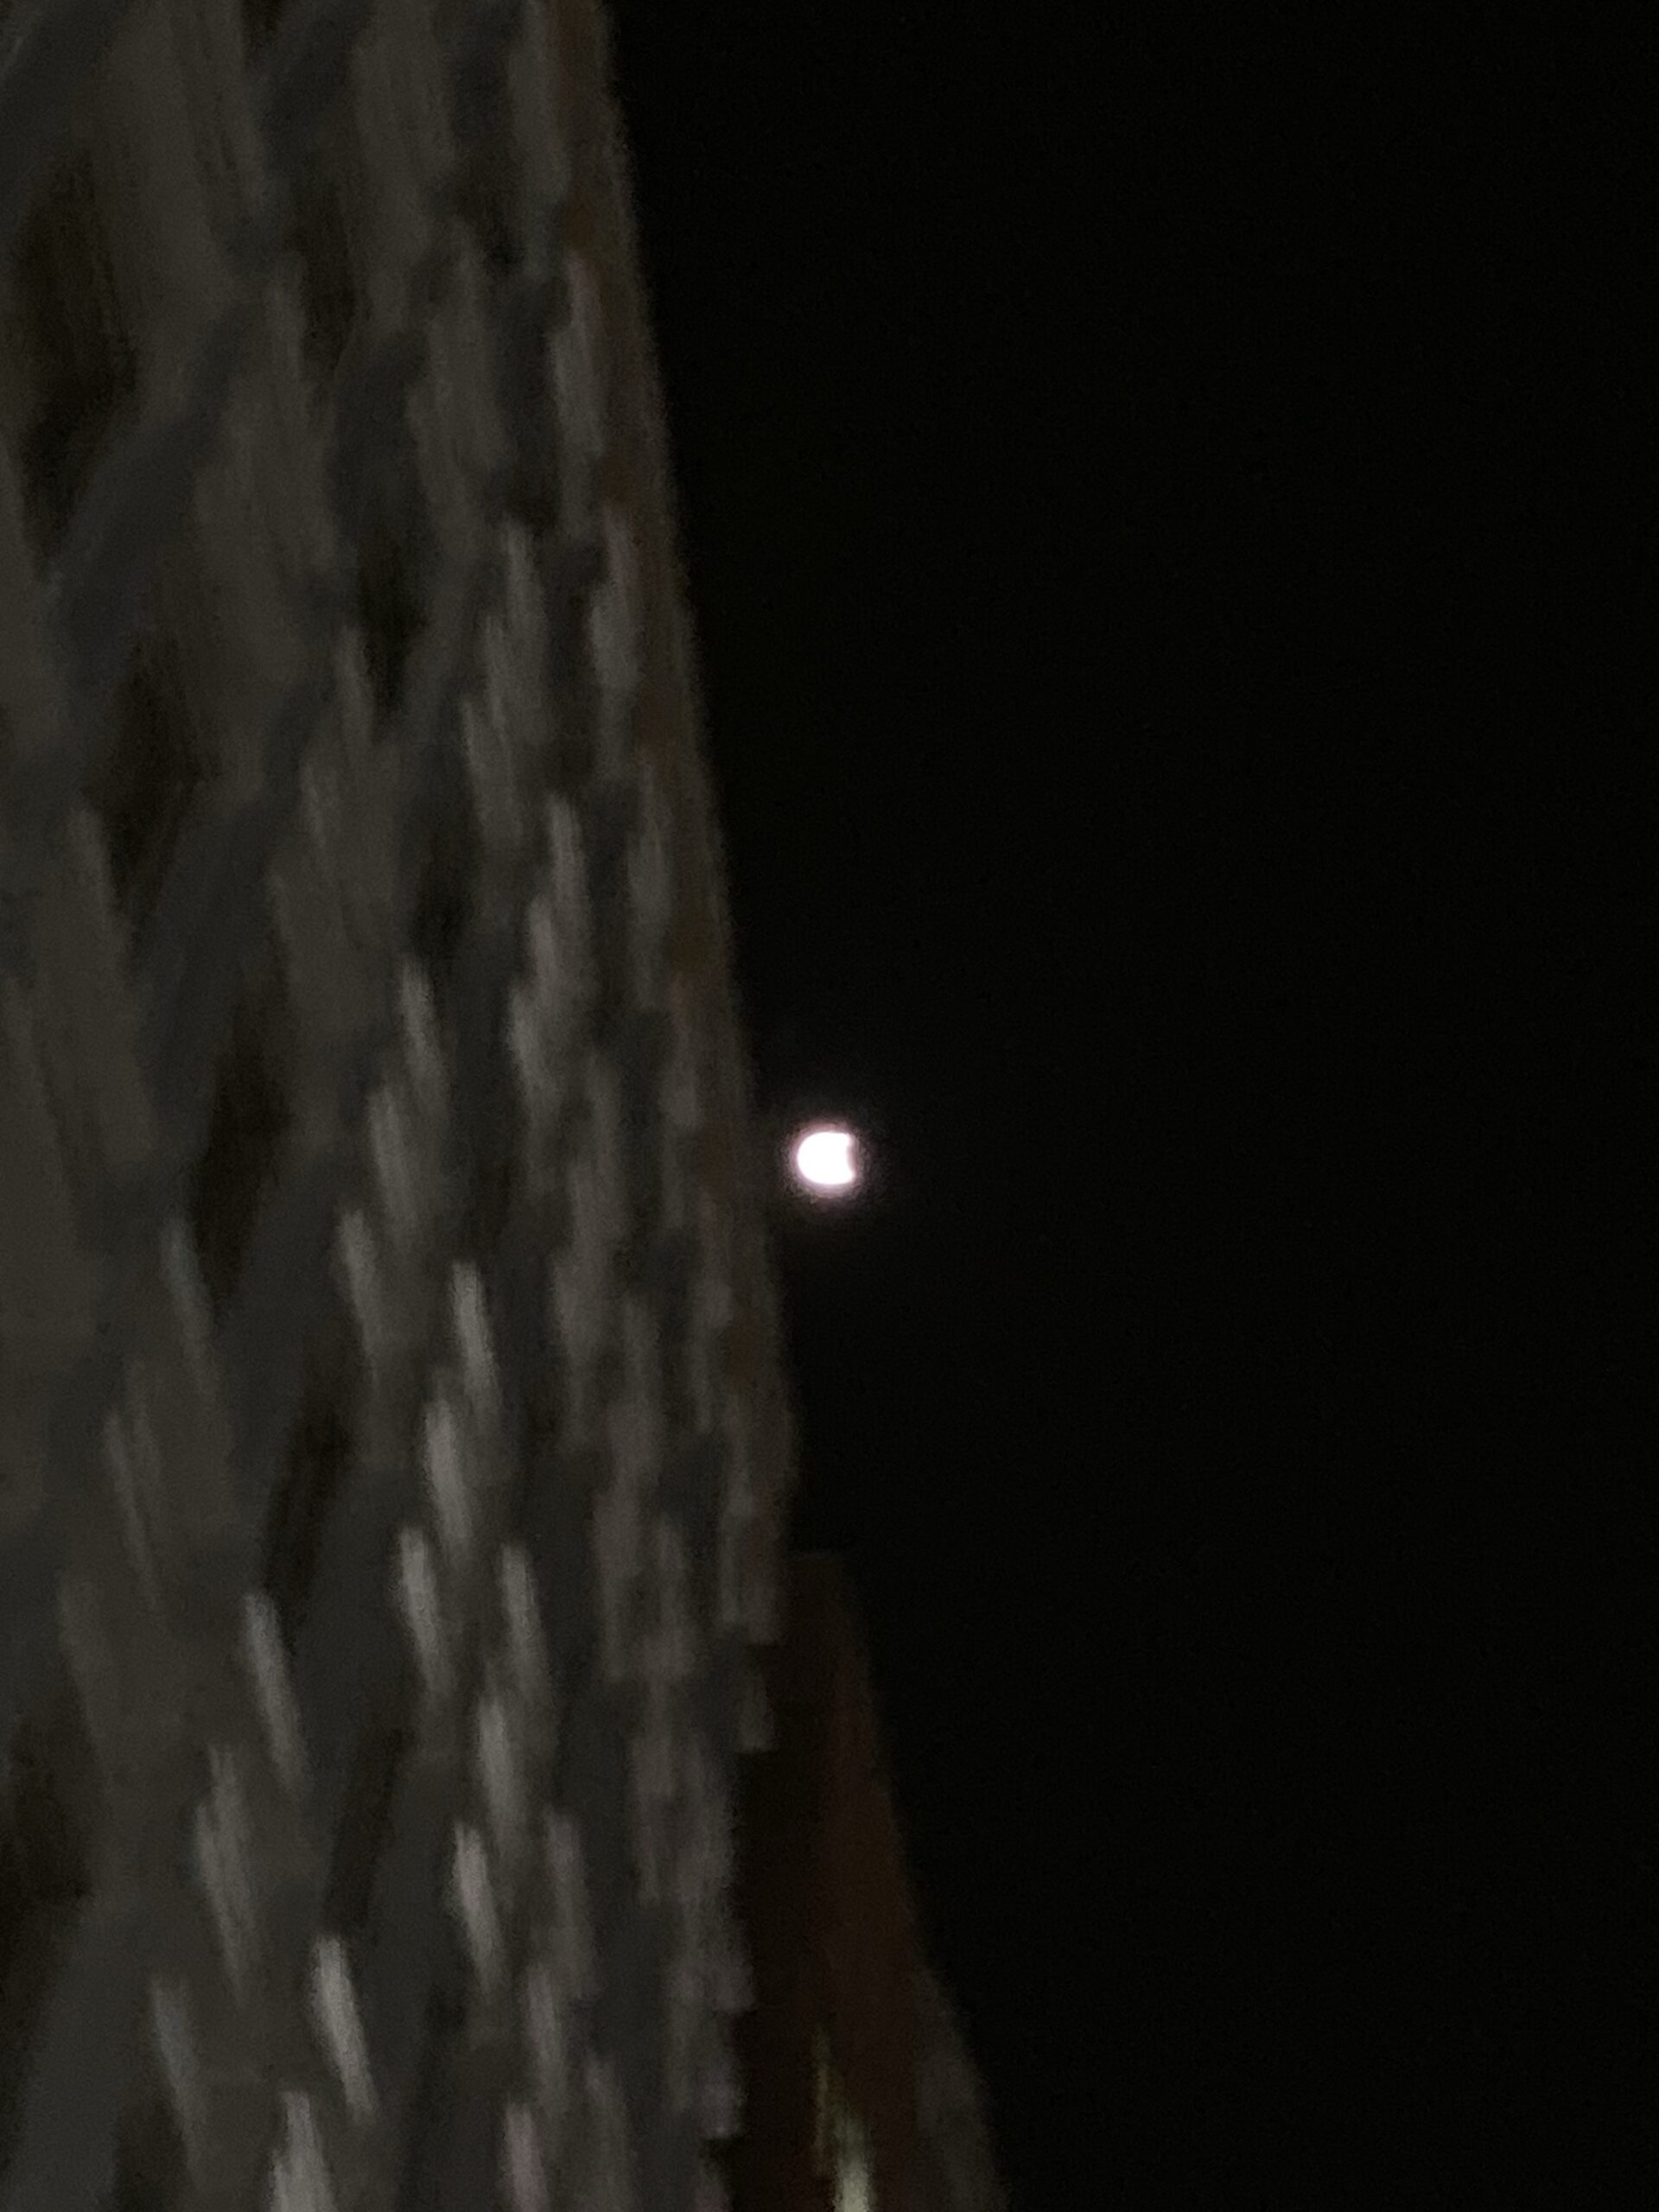 The moon is still bright